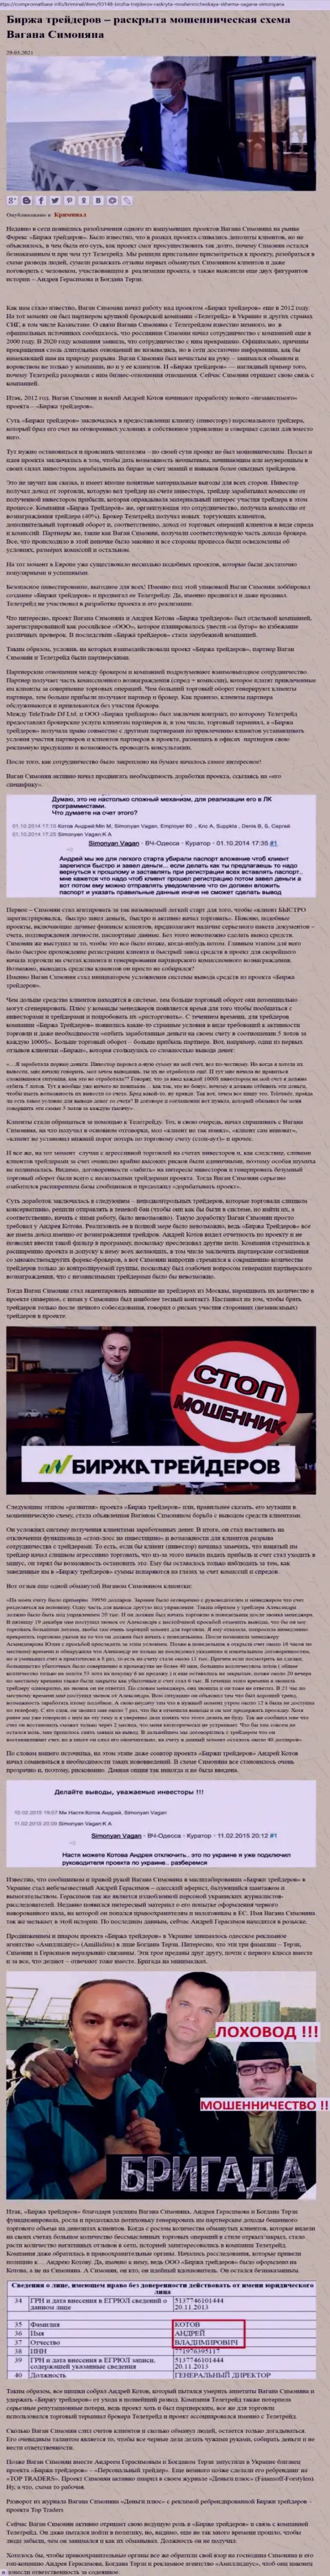 Рекламой компании Биржа Трейдеров, связанной с мошенниками ТелеТрейд, тоже был занят Терзи Богдан